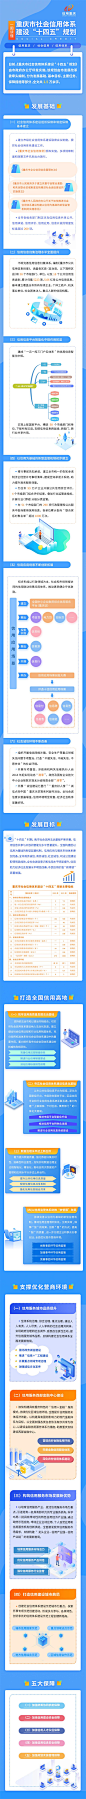 【【图解】重庆市“十四五”社会信用体系建设规划】_信用中国